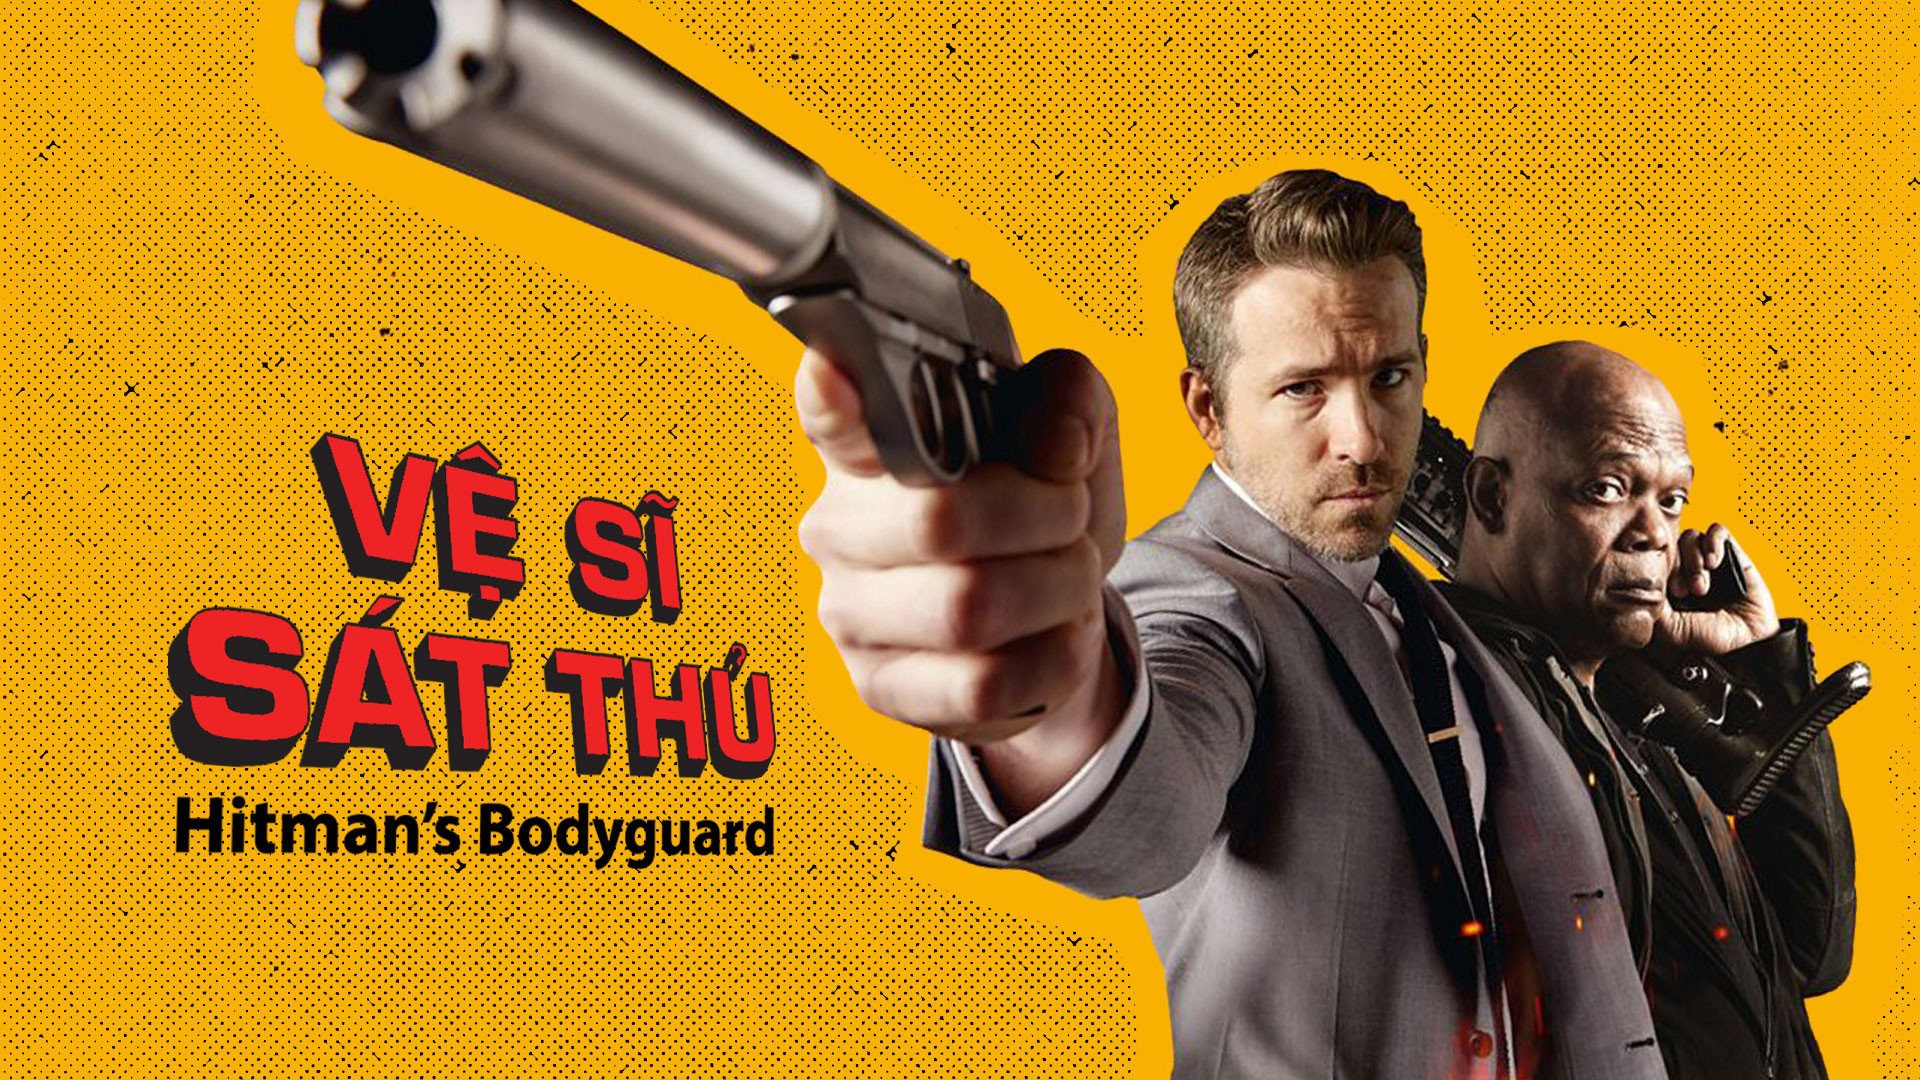 "Hitman’s Bodyguard - Phim vệ sĩ sát thủ" là một bộ phim hài hành động đầy thú vị